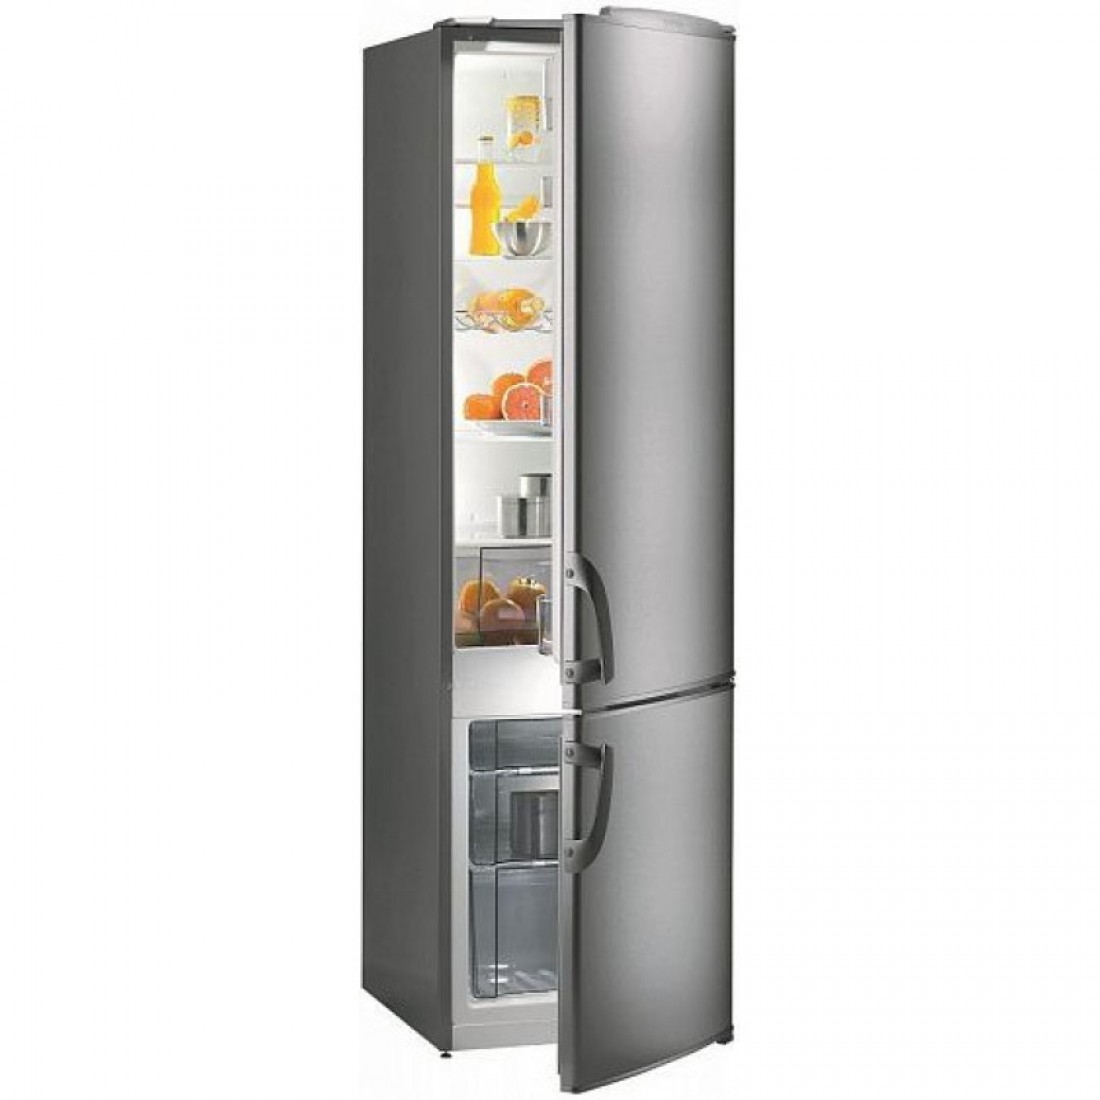 Узкие холодильники до 55 см. Холодильник Gorenje RK 41200. Холодильник Gorenje rk41200e, двухкамерный, серебристый. Холодильник Gorenje RK 41200 W. Холодильник Gorenje RK 6201 FW.